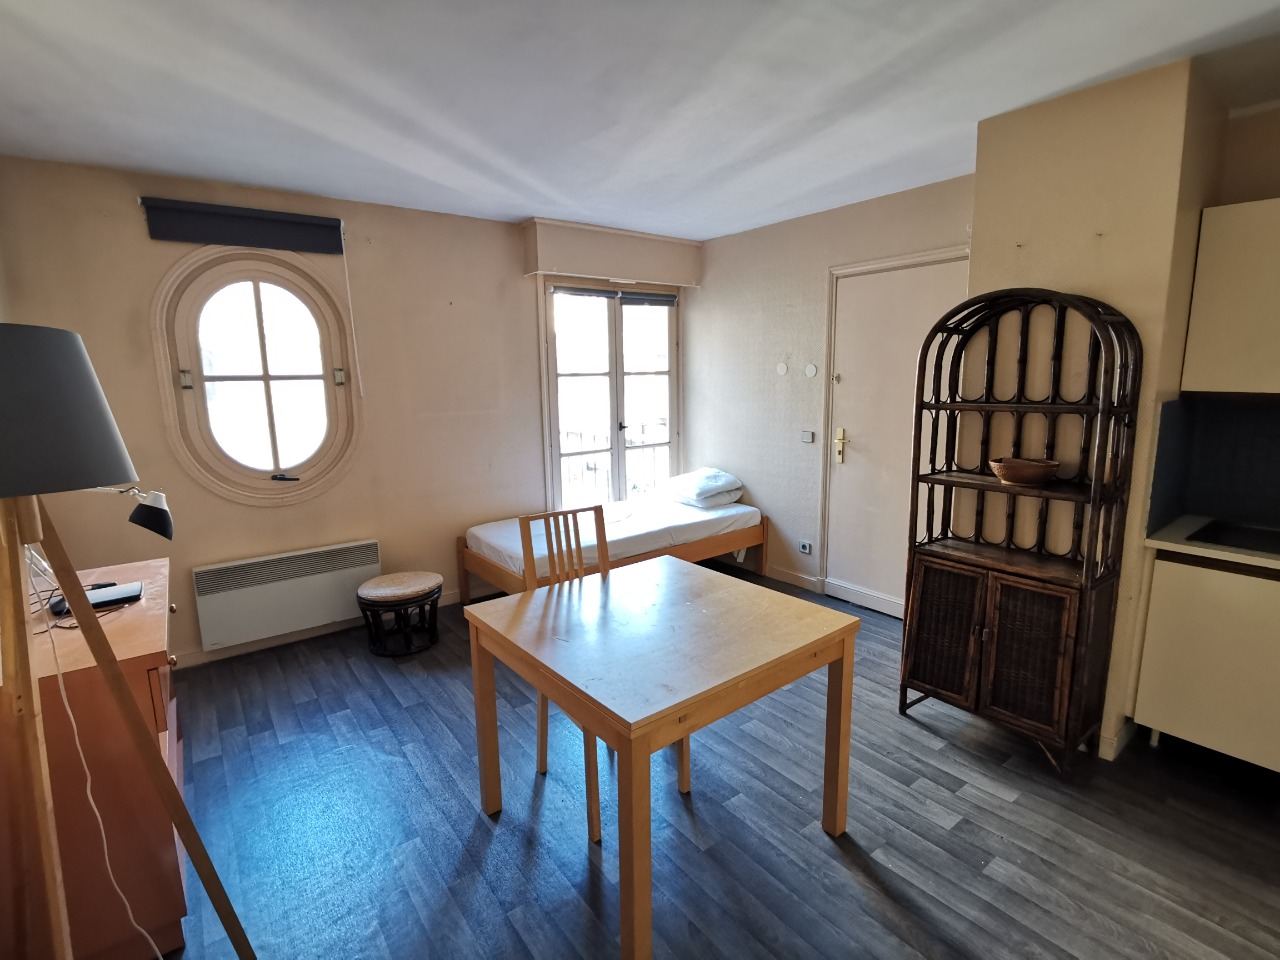 Vieux lille studio meuble de 2147m Photo 1 - JLW Immobilier